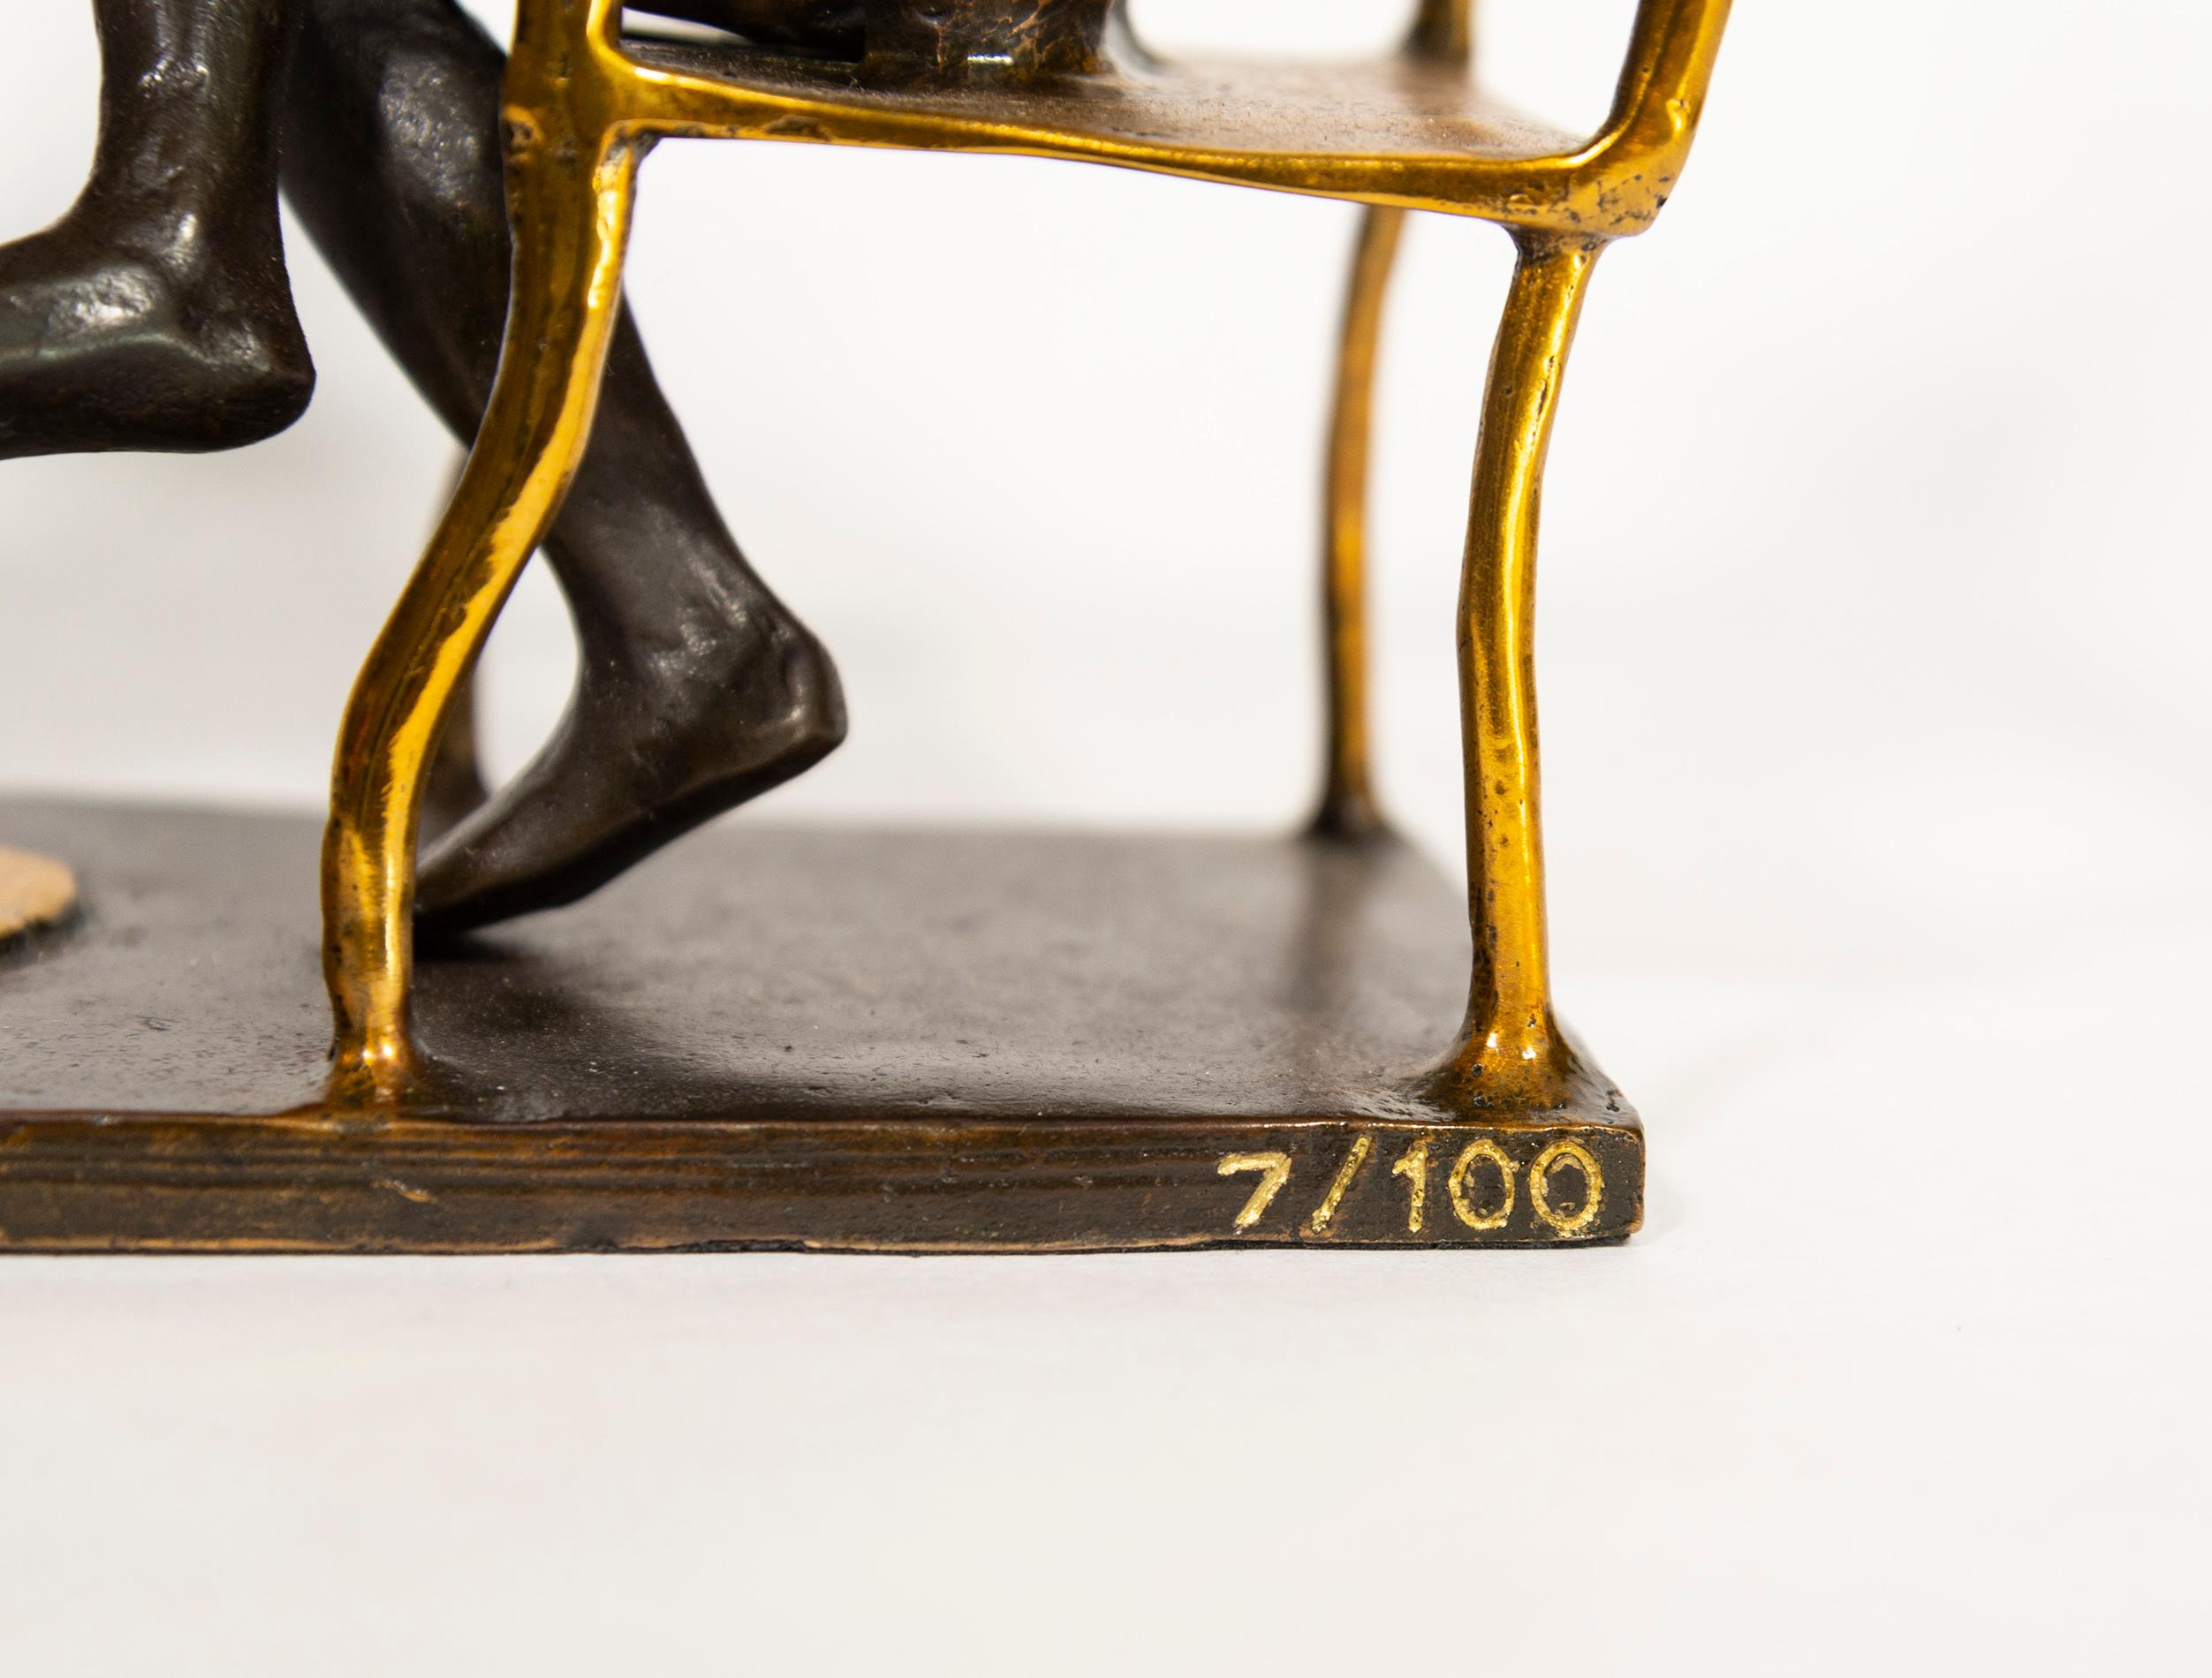 Gillie and Marc haben ihre beliebten Hybrid-Skulpturen neu aufgelegt und diese skurrile Tischfigur aus Bronze gegossen. Um die spirituelle Verbindung zwischen Mensch und Tier darzustellen, sitzt eine Kaninchenfrau einem Hundemann an einem kleinen